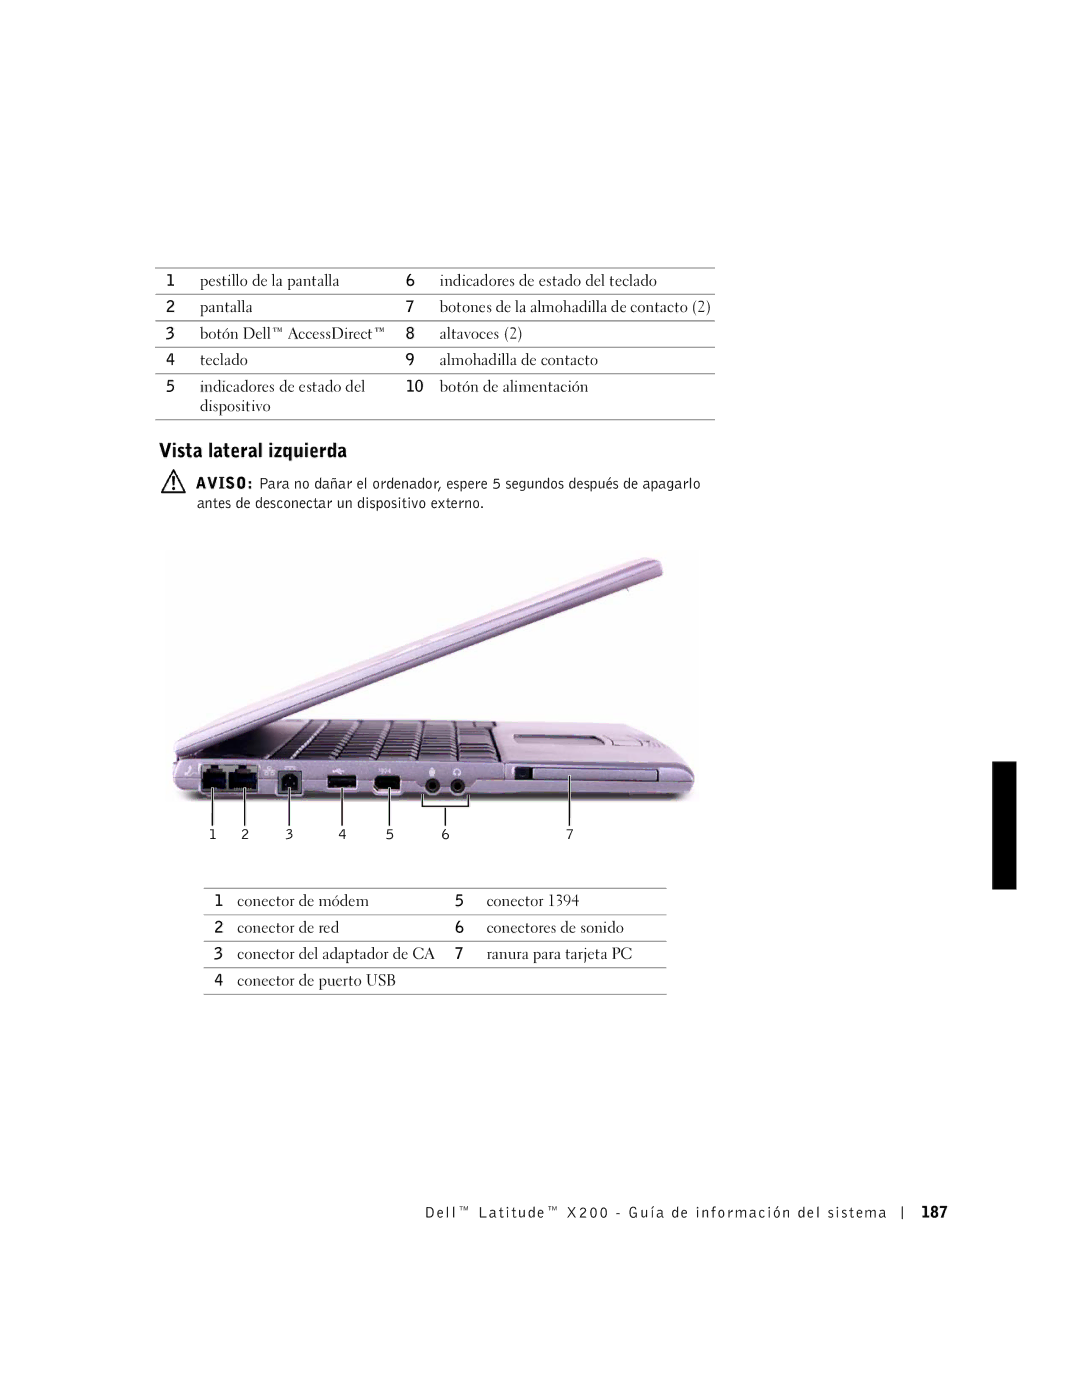 LeapFrog PP03S manual Vista lateral izquierda, Dell Latitude X200 Guía de información del sistema 187 